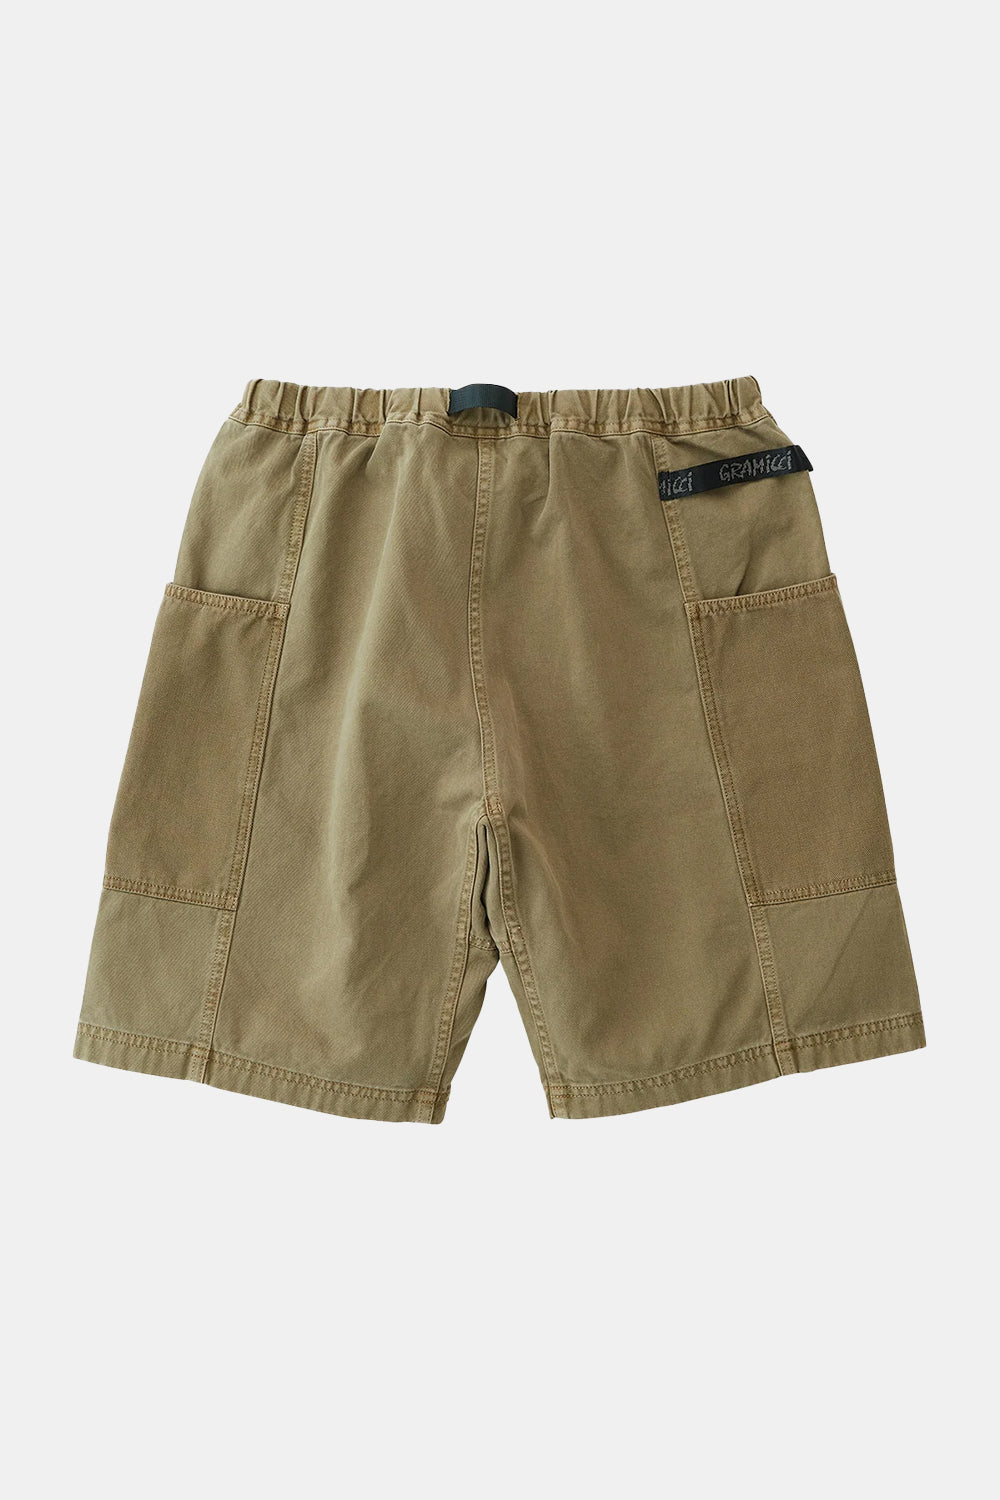 Gramicci Gadget Shorts (Moss)